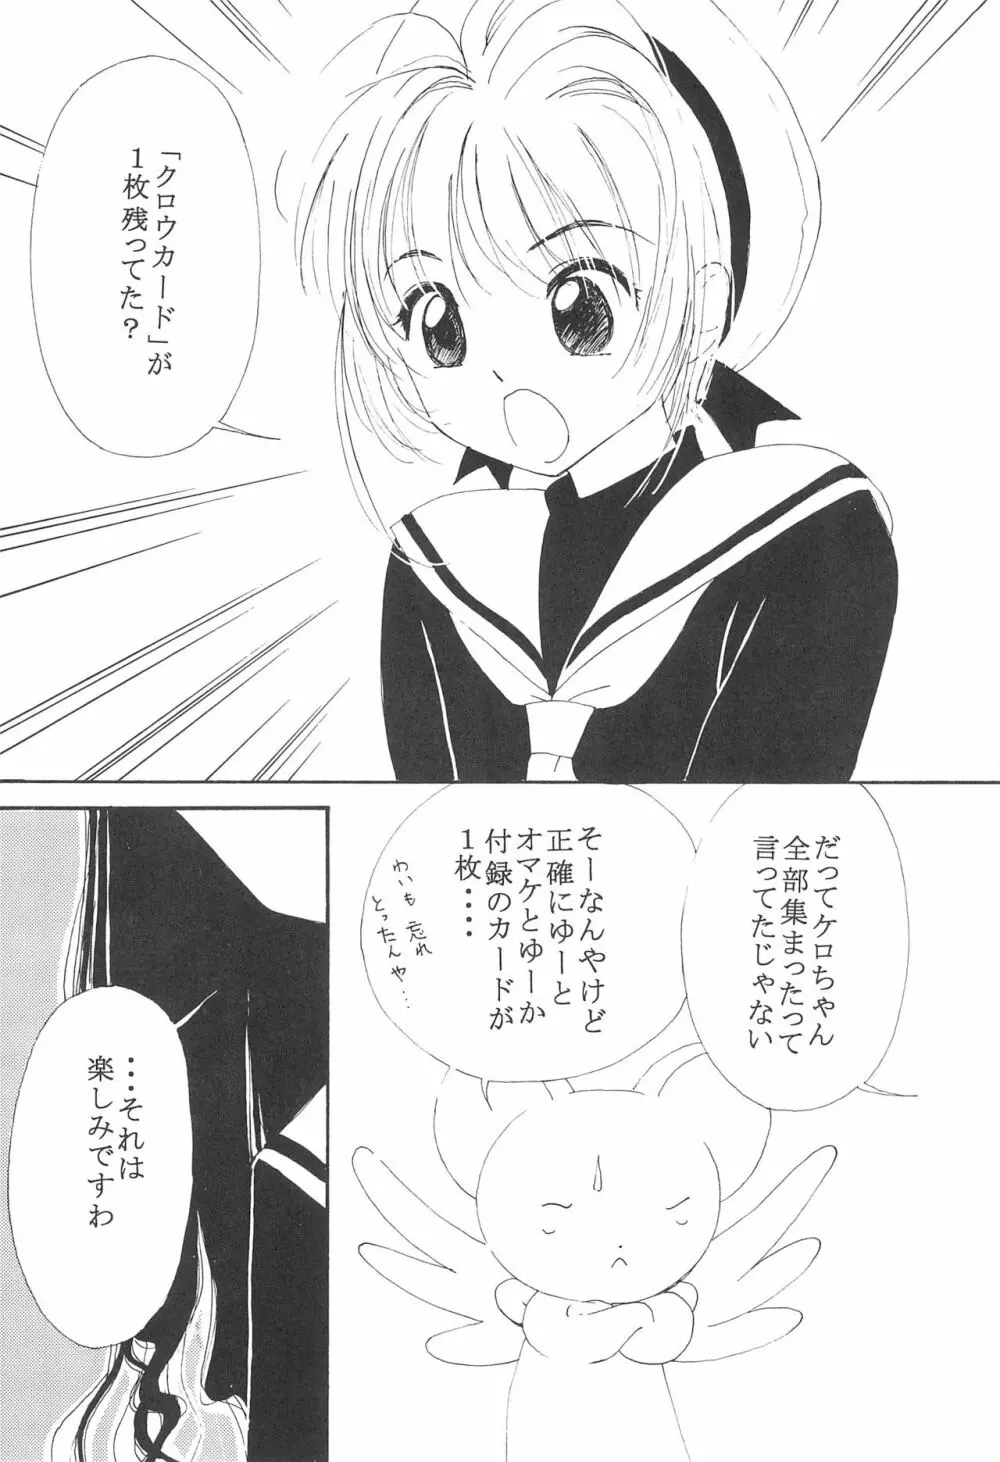 MoMo no Yu 8 5ページ